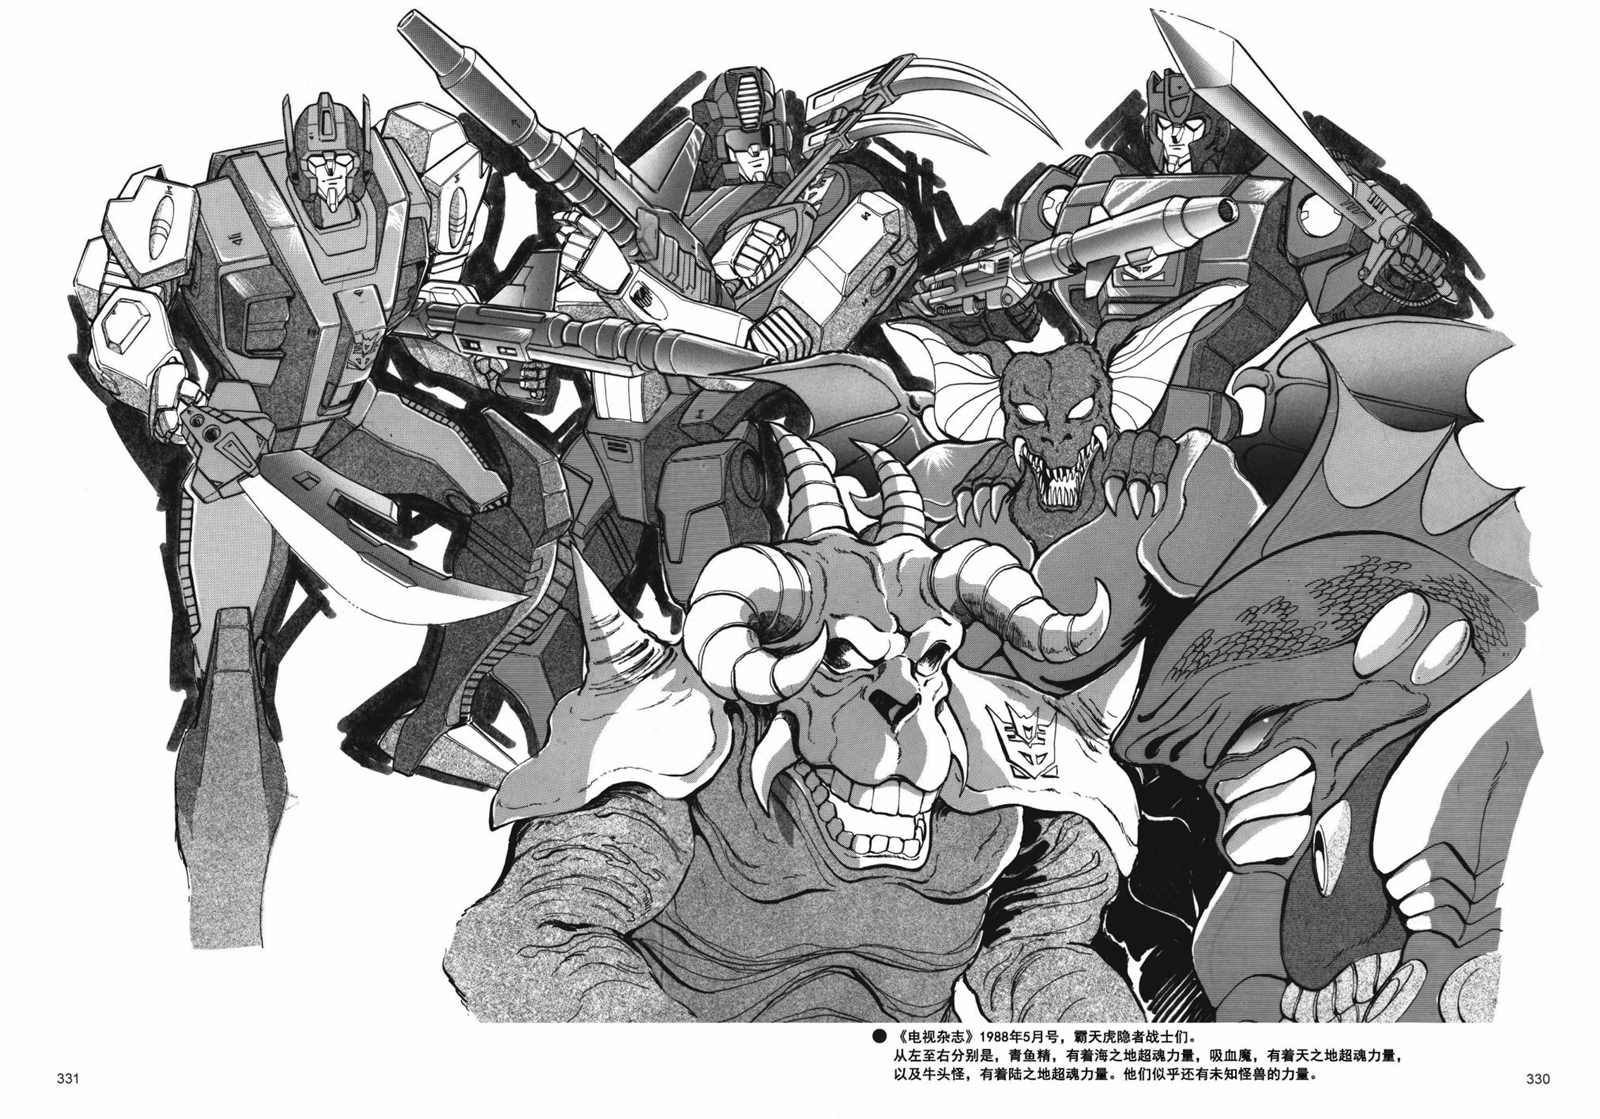 变形金刚日版G1杂志插画 - 战斗吧！超机械生命体变形金刚：超神勇者之力 - 2